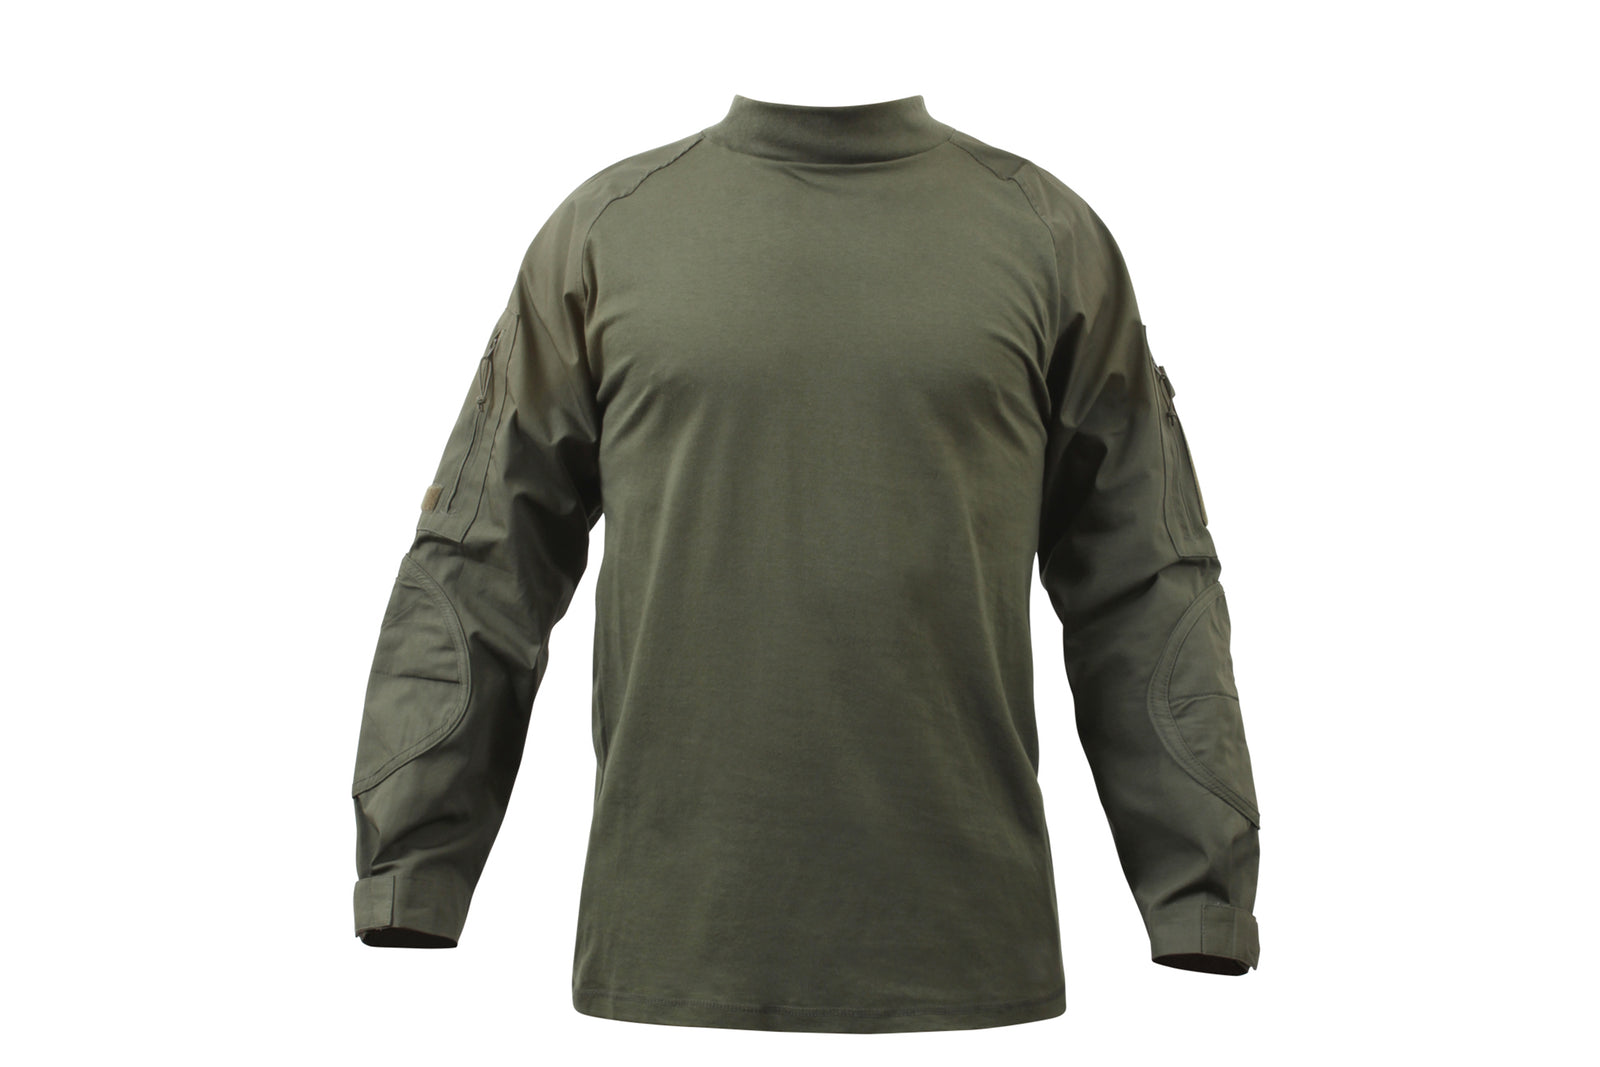 Rothco Military NYCO Combat Shirt